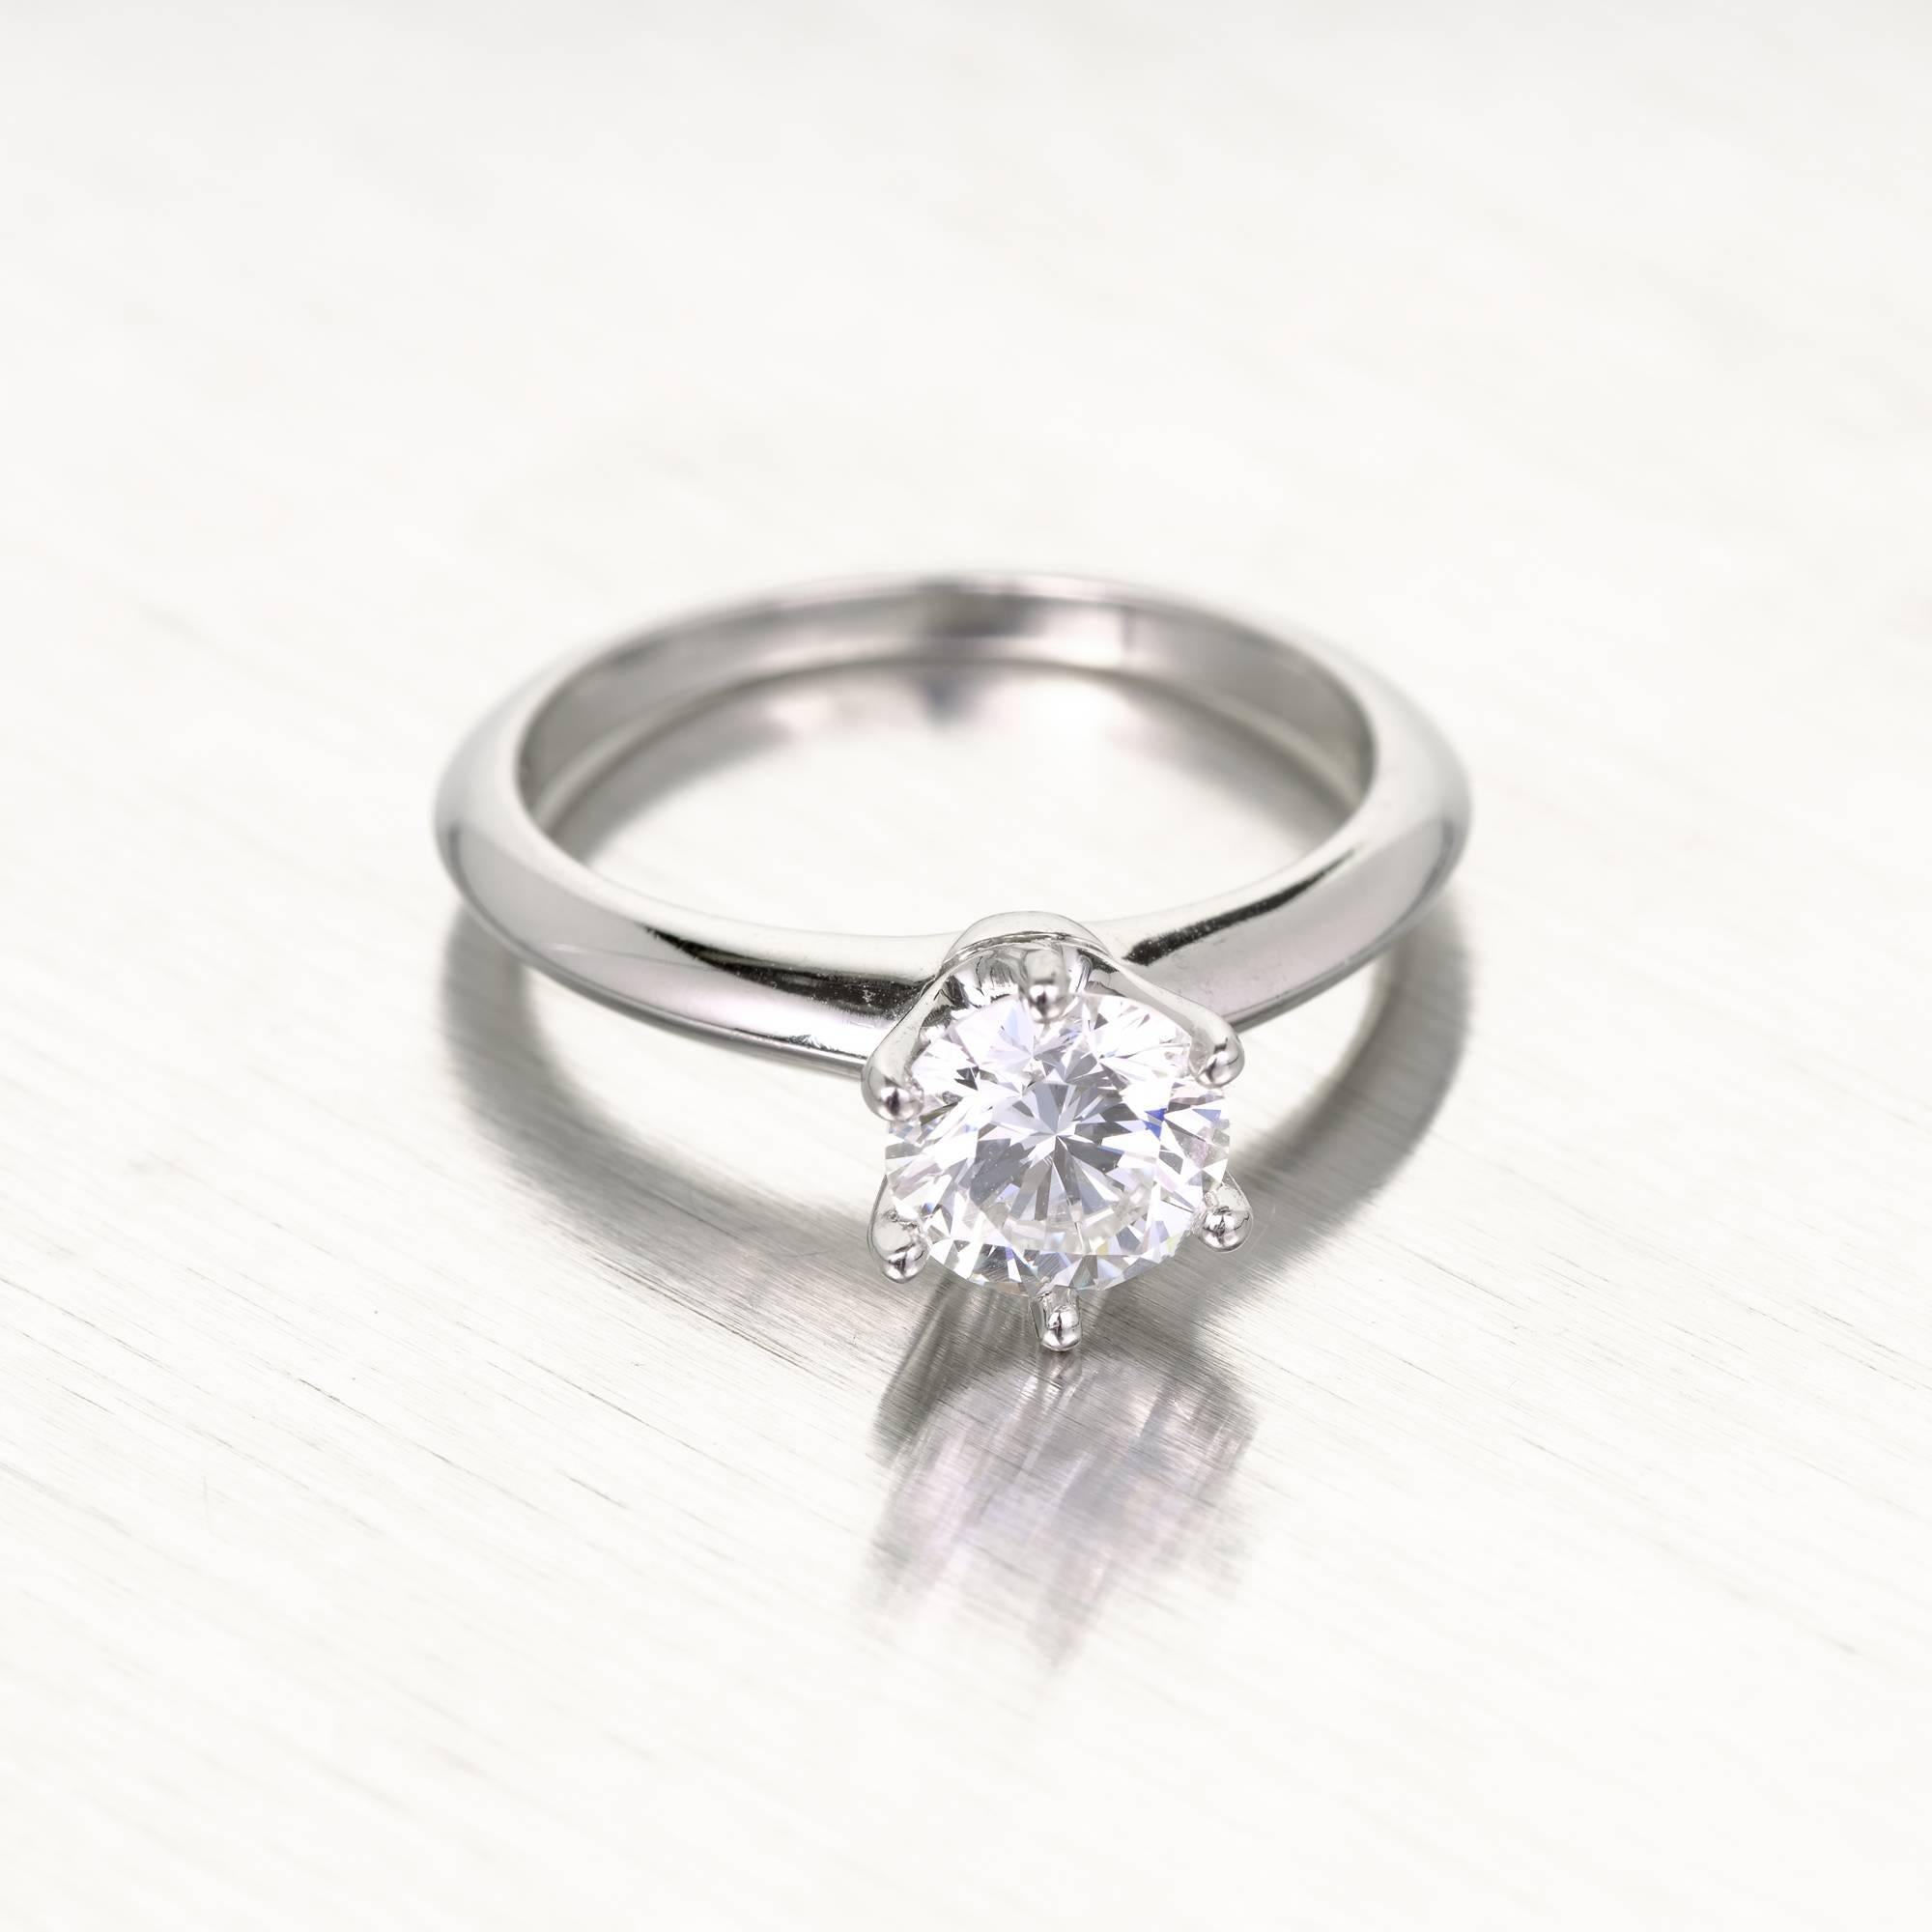 Tiffany & Co Diamant Solitär Verlobungsring in einer Platinfassung. 1980-1990 gestempelt authentisch Tiffany Platin Verlobungsring.  GIA-zertifizierter Diamant. Der Diamant wurde für die Prüfung des GIA-Zertifikats # entfernt und zurückgesetzt. 

1